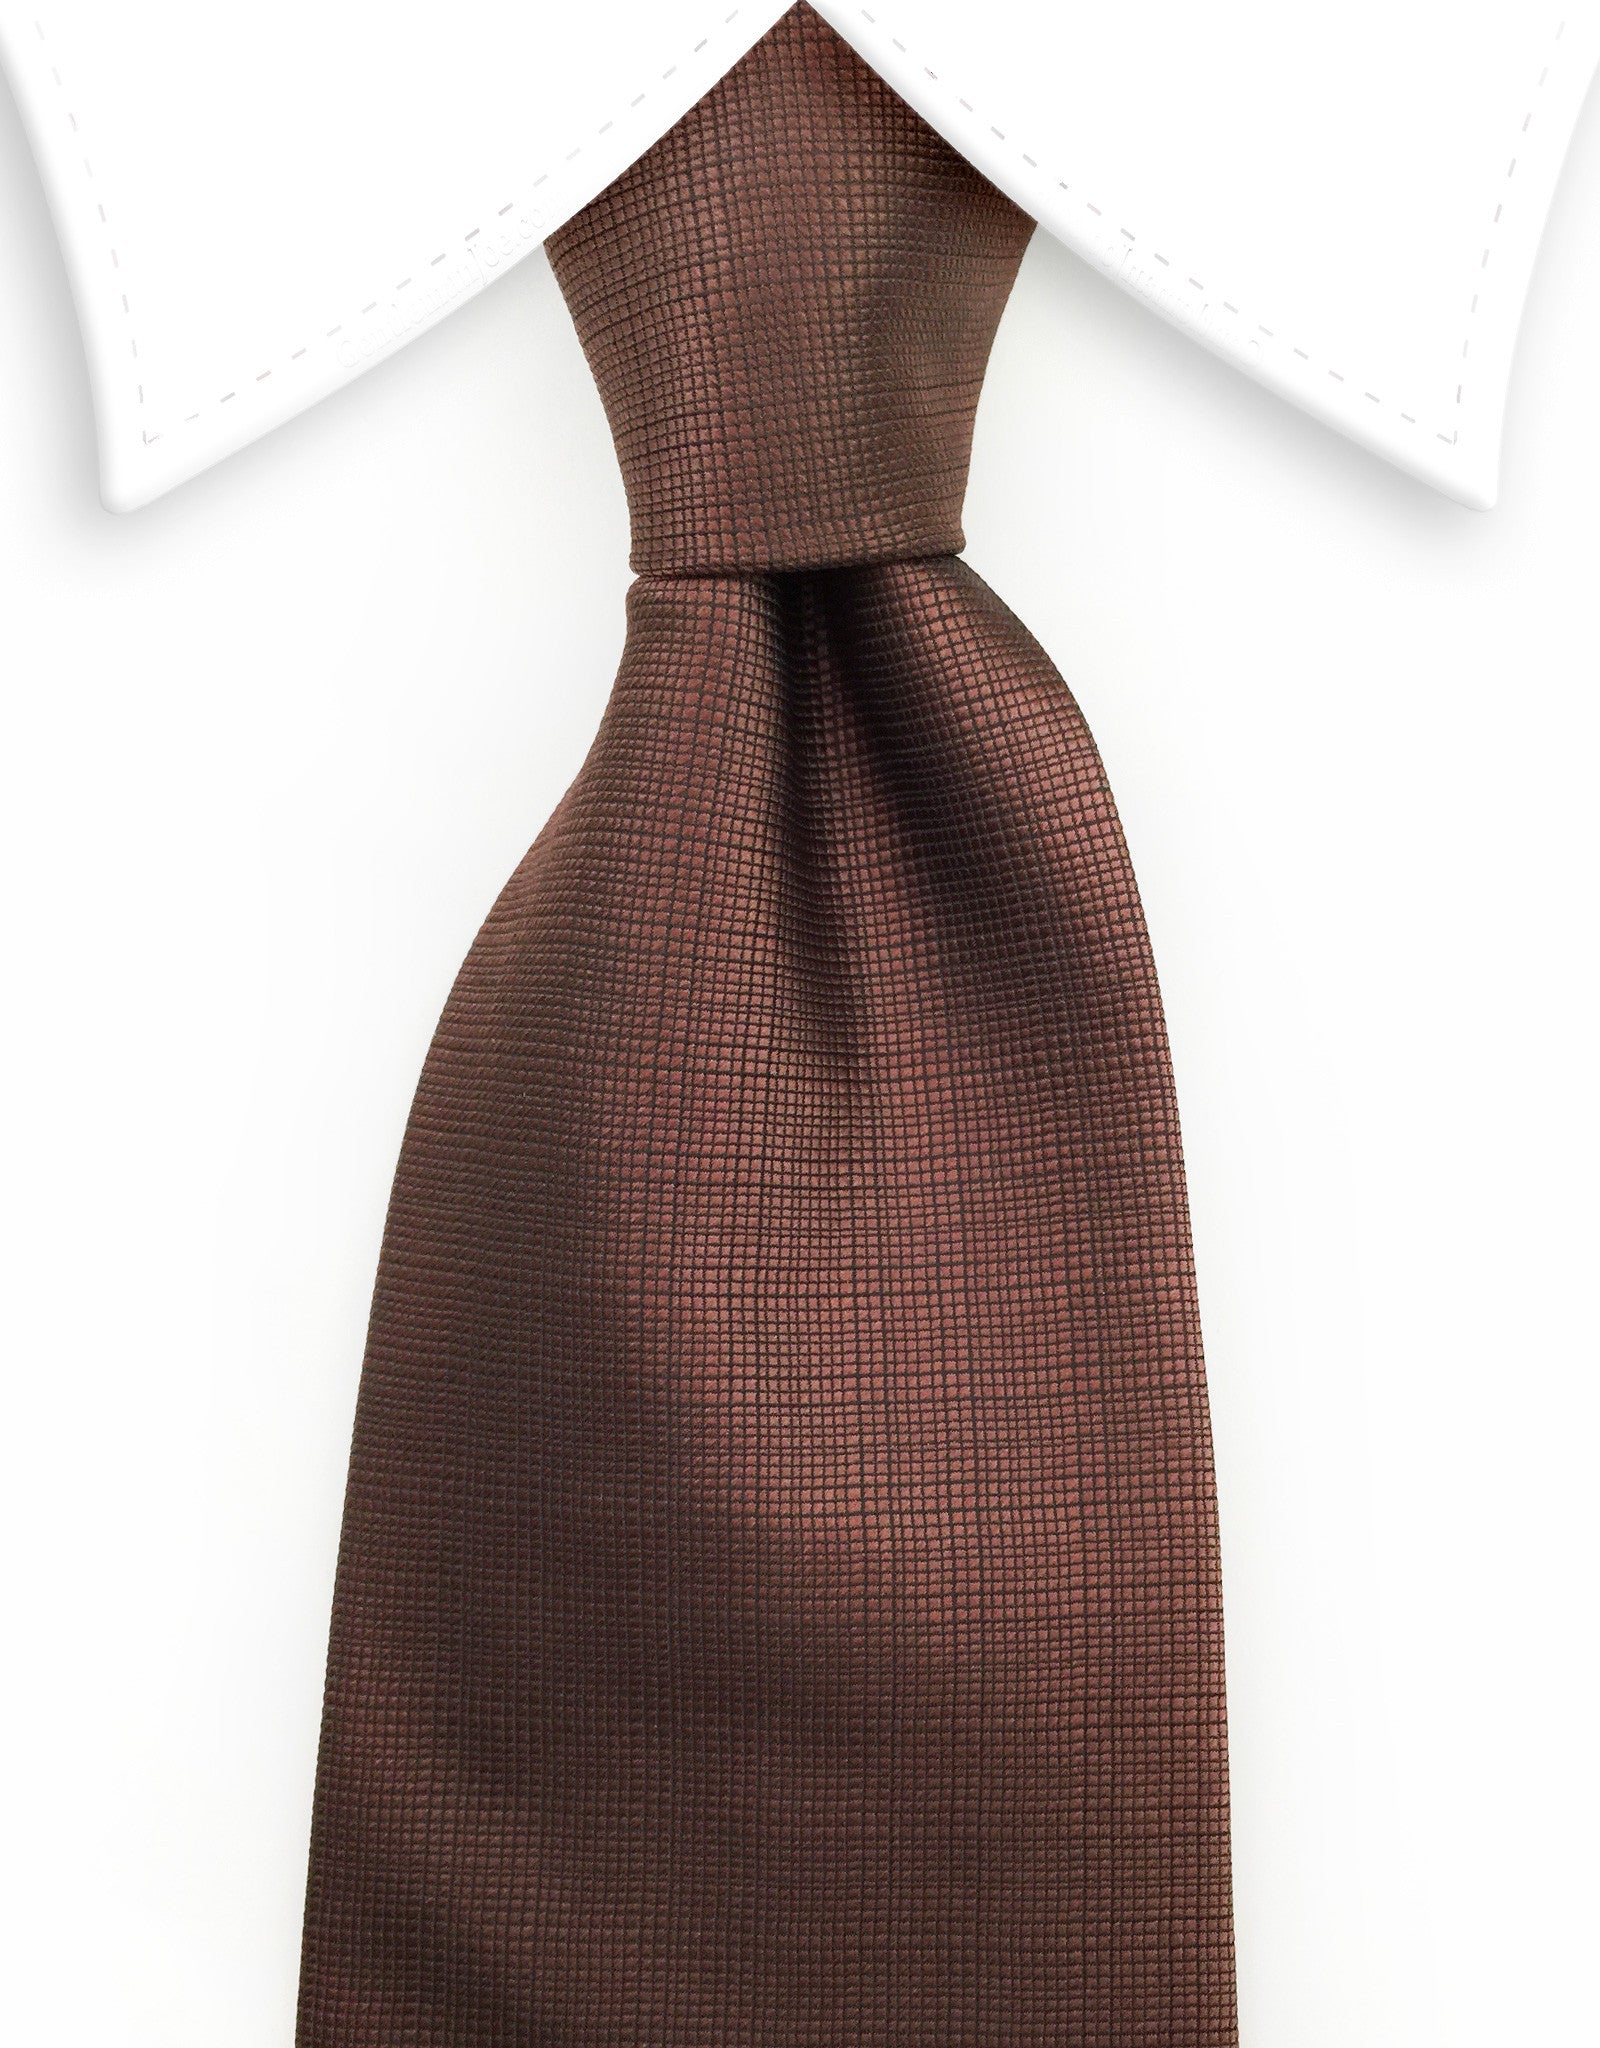 Espresso Brown Tie with Grid – GentlemanJoe